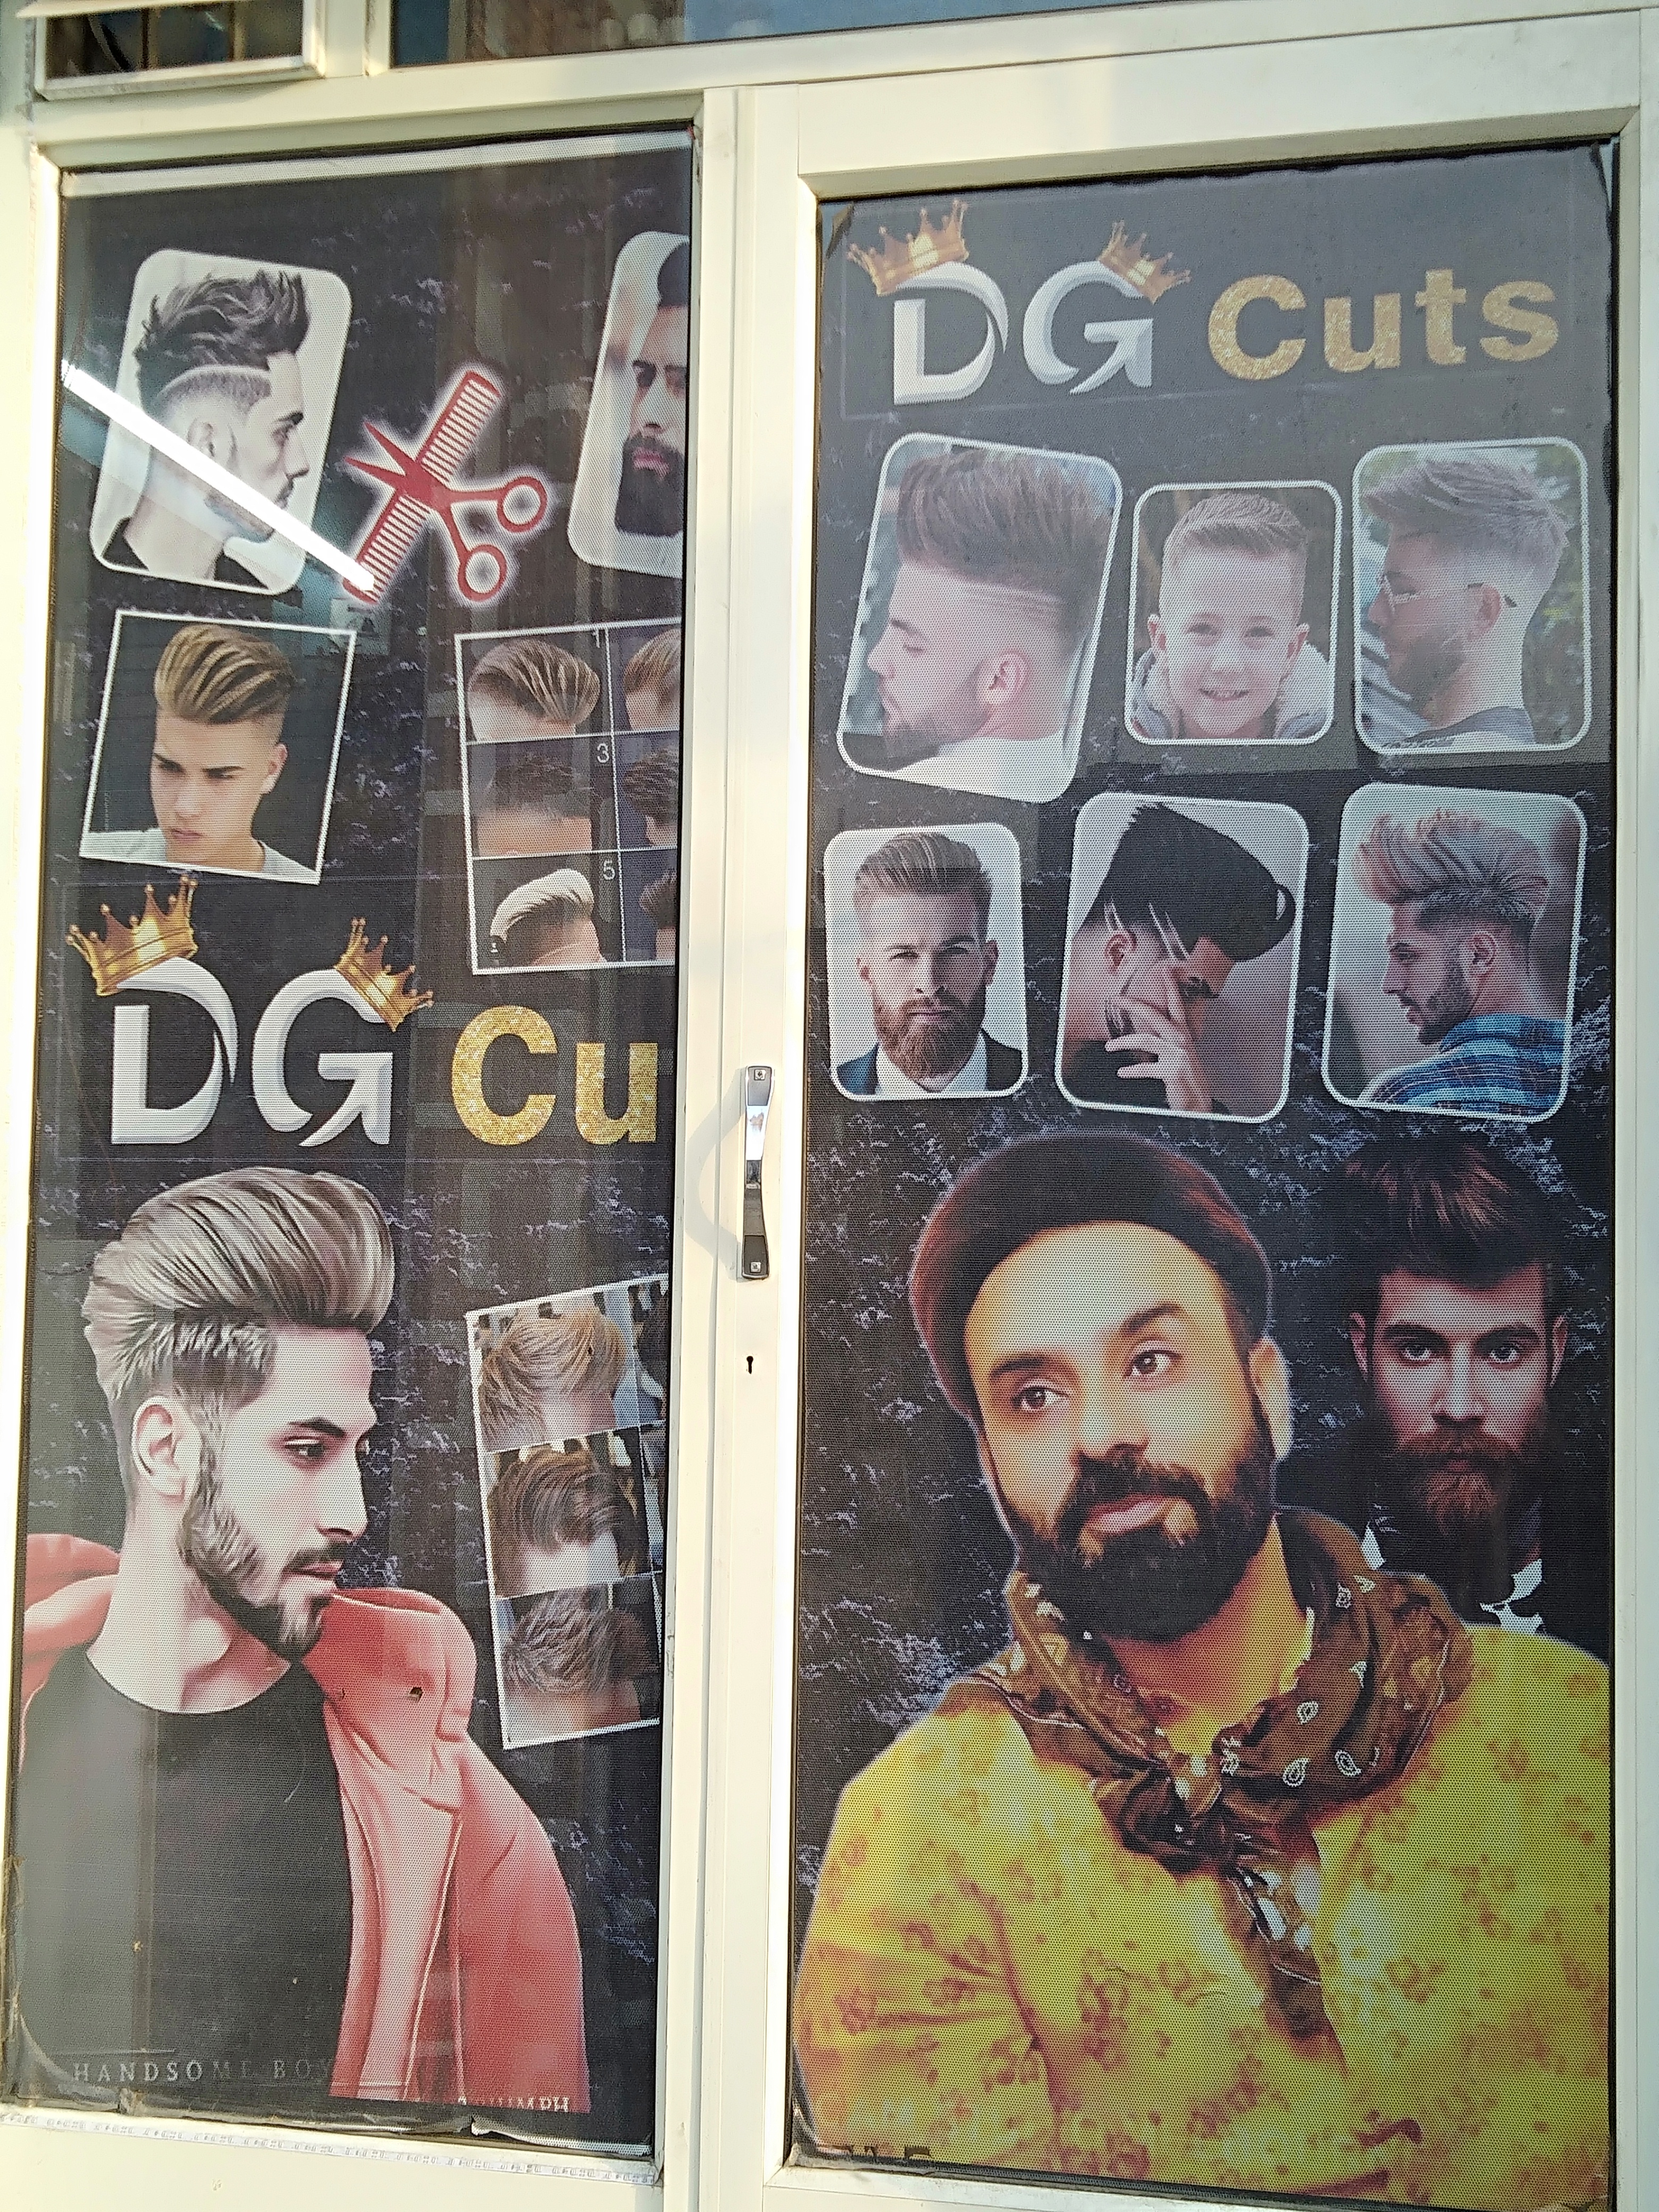 DG cuts